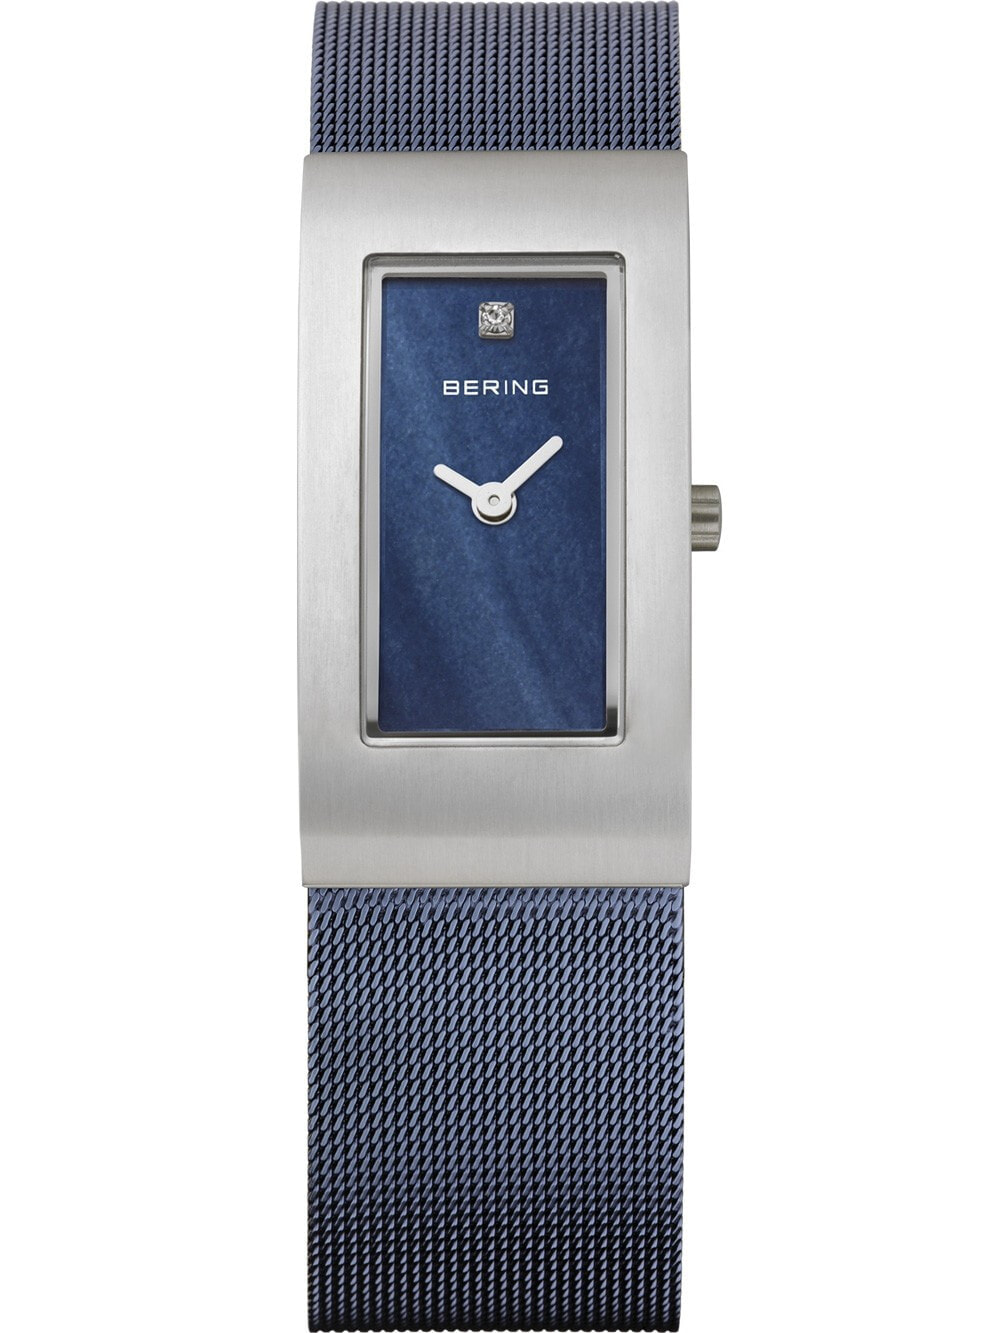 Женские наручные кварцевые часы Bering браслет из нержавеющей стали. Водонепроницаемость: 3 АТМ.  Антибликовое, сапфировое стекло защищает часы.